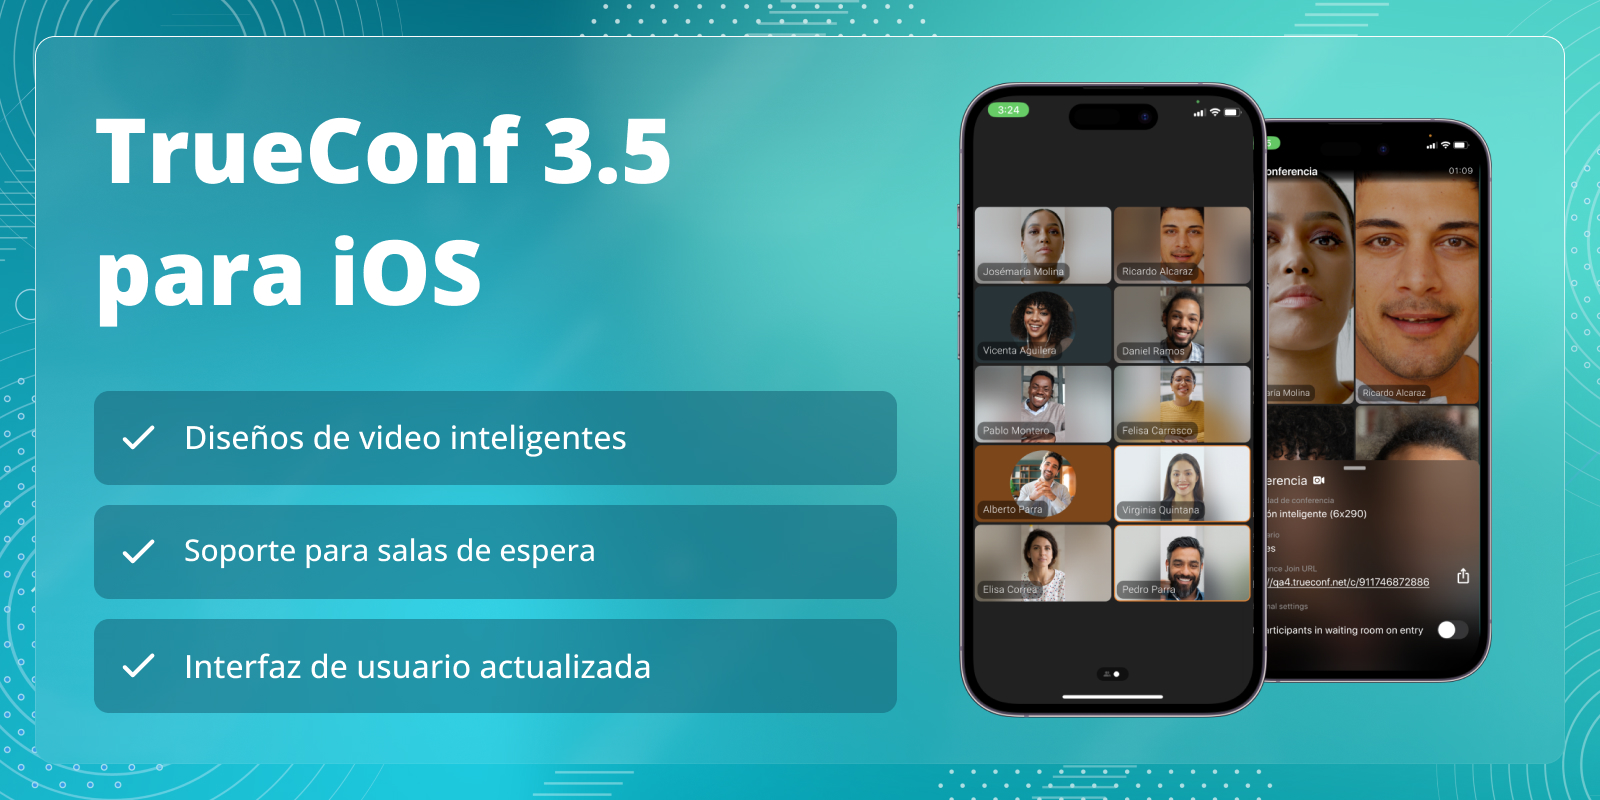 TrueConf 3.5 para iOS: Diseños inteligentes y soporte para salas de espera 4